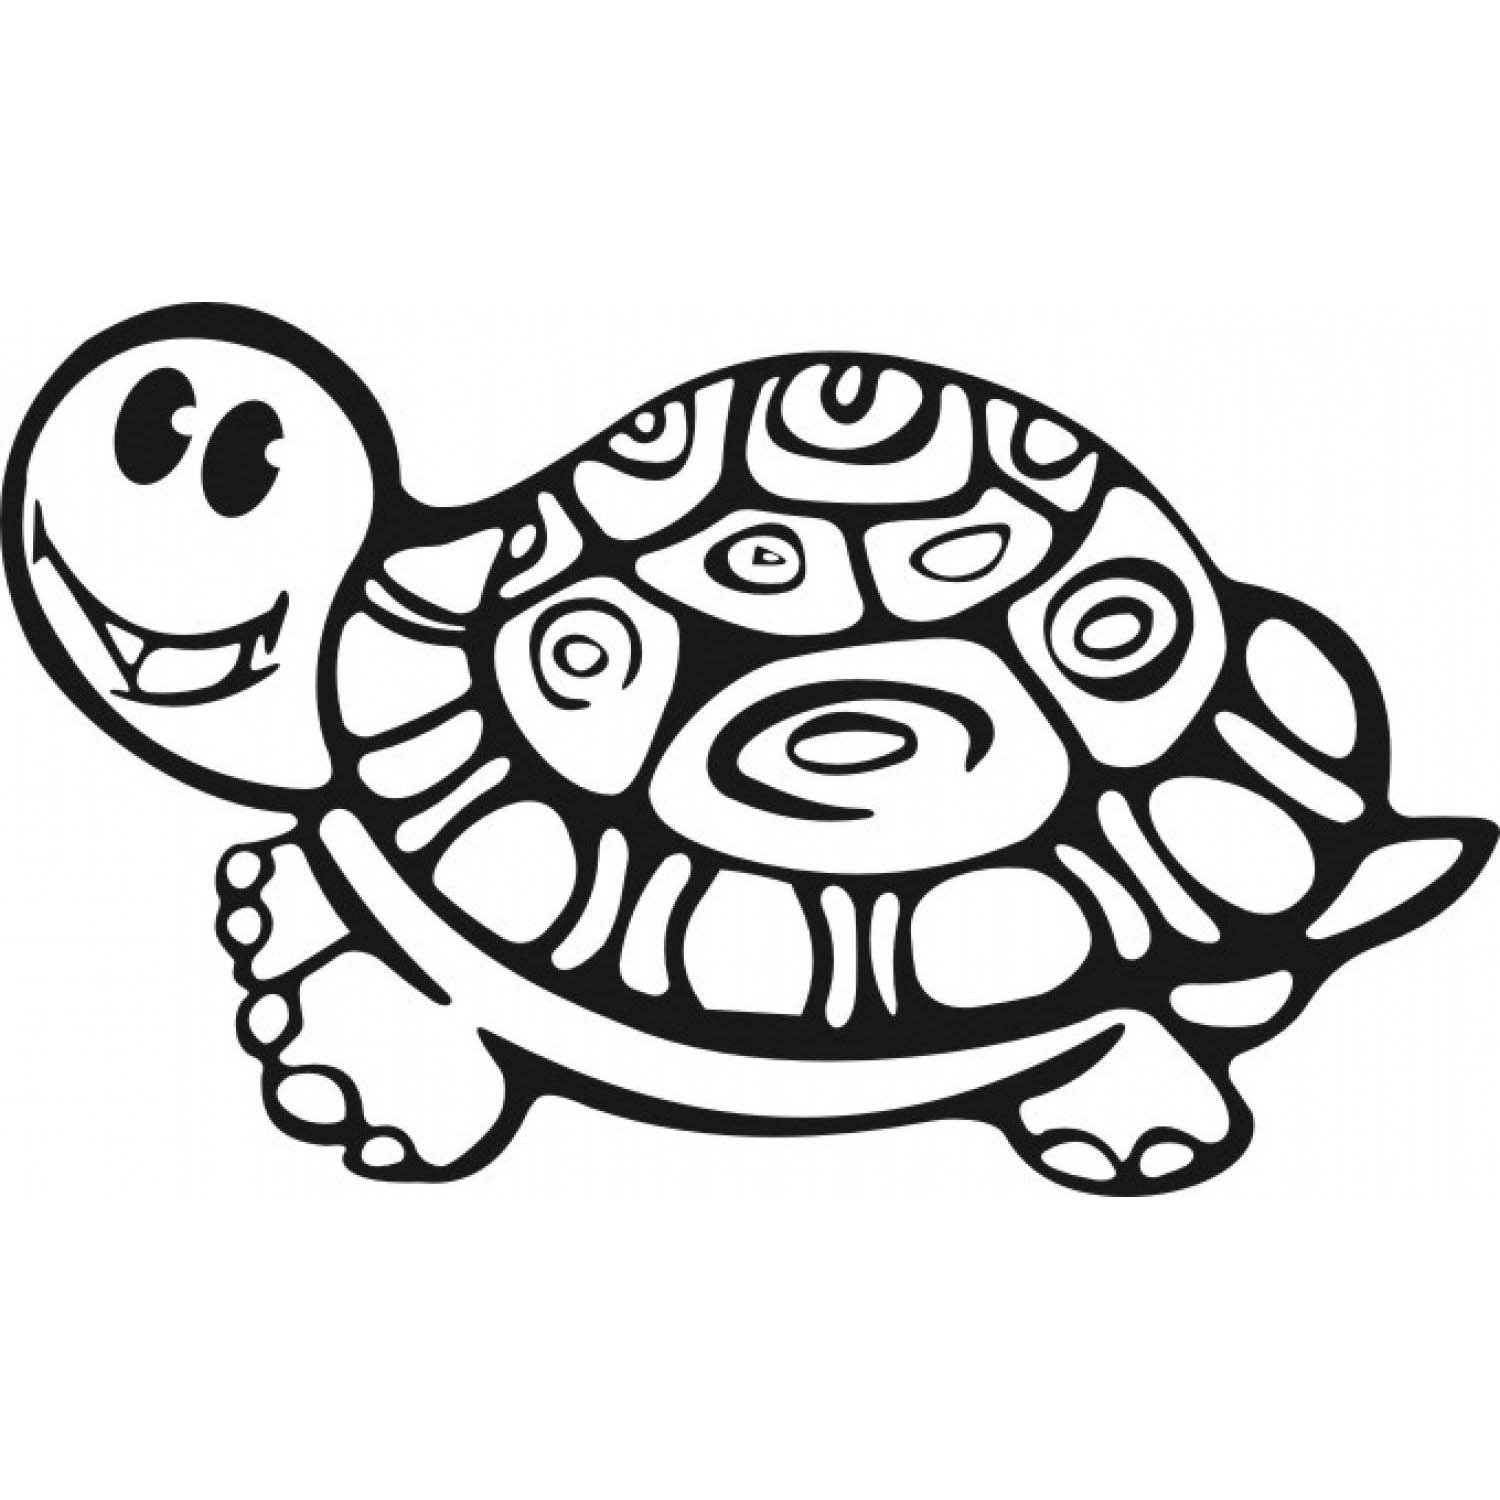 Рисунок черепахи - векторный клипарт Royalty-Free